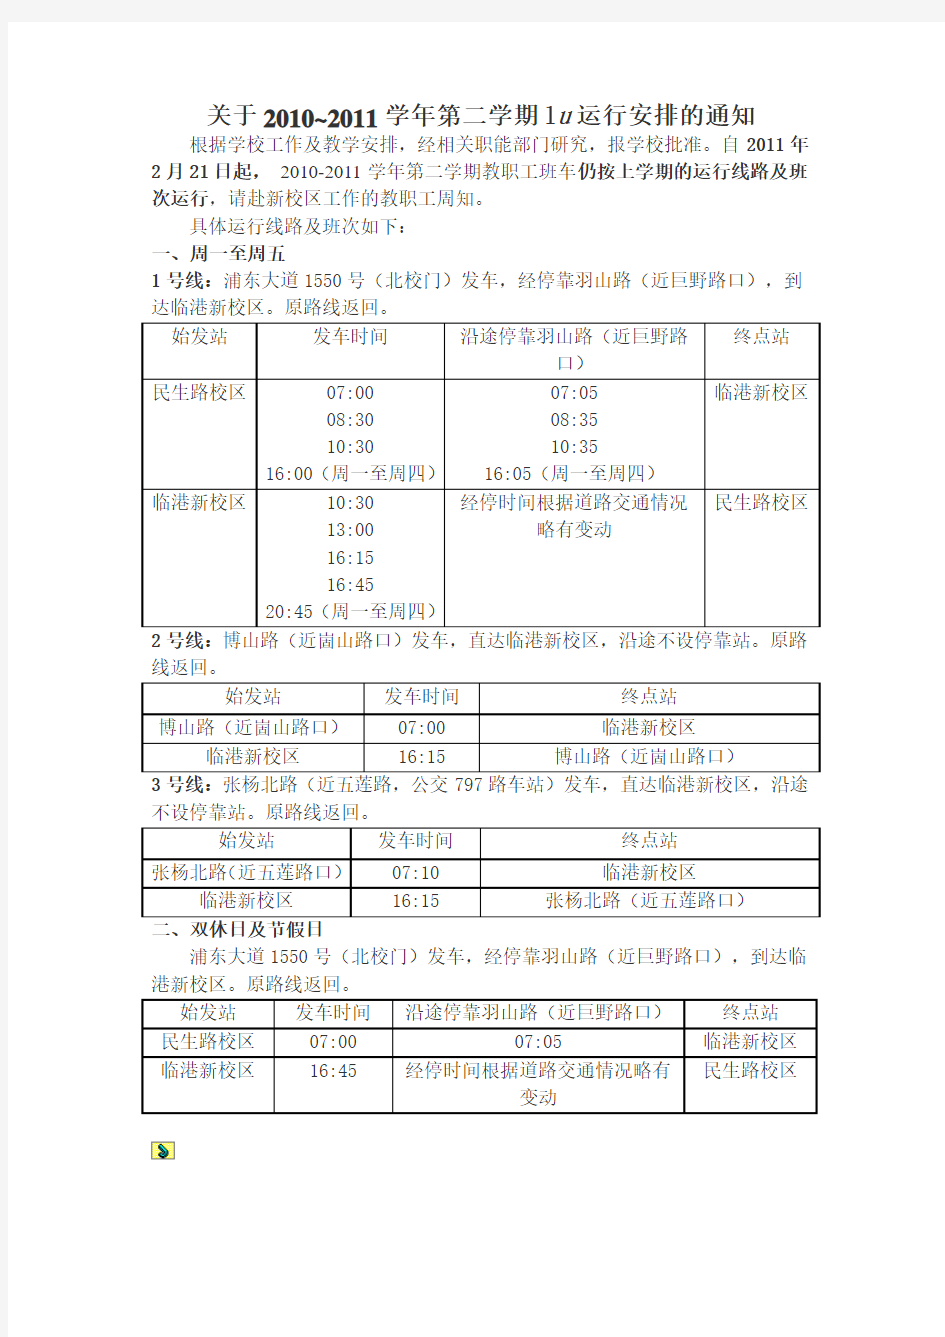 上海海事大学校车时间表